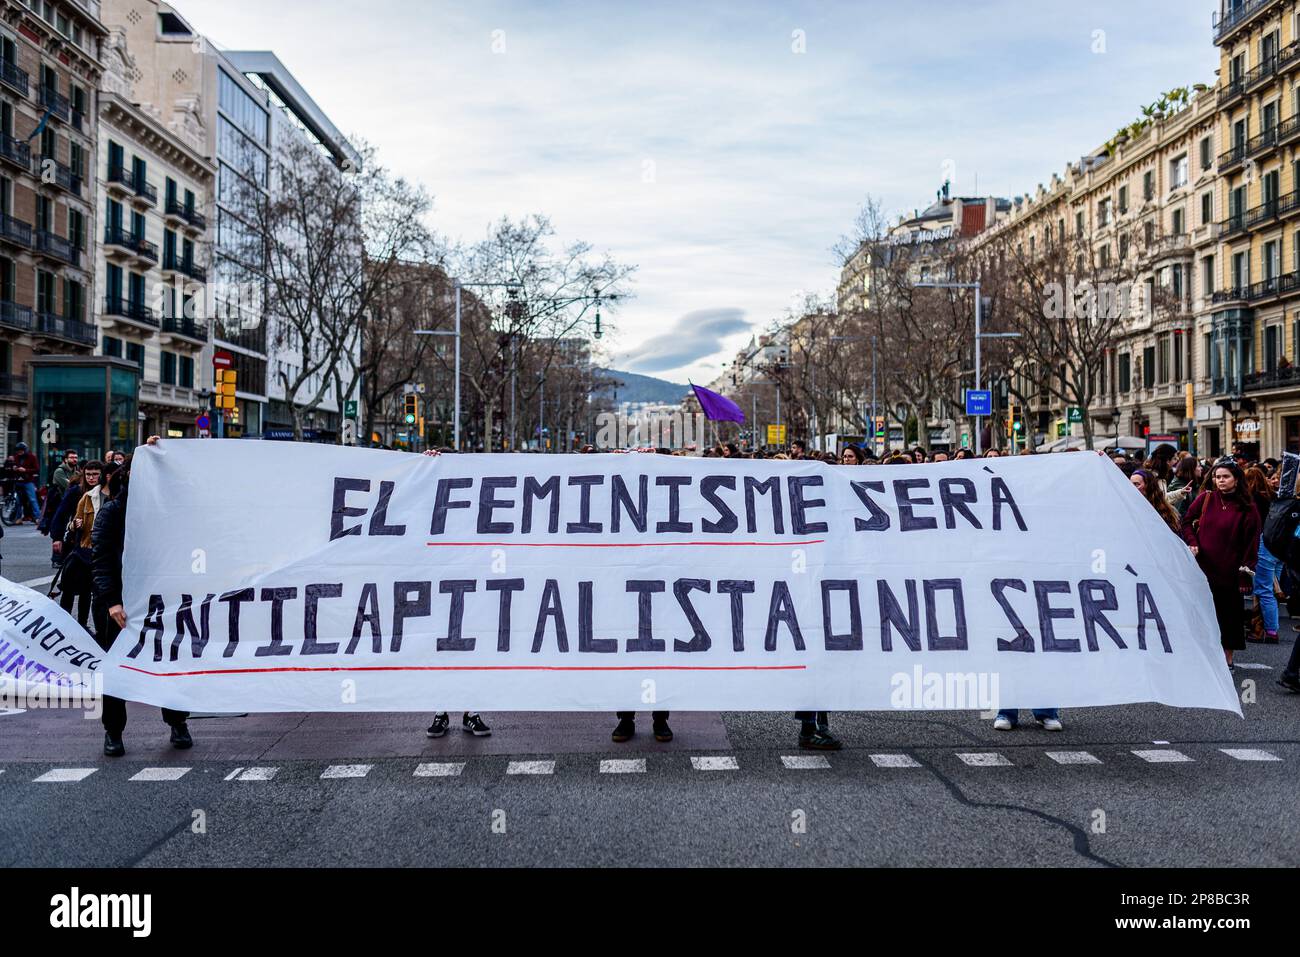 Barcelona, Spanien. 08. März 2023. Ein Banner, auf dem steht: "Feminismus wird anti-kapitalistisch sein oder nicht sein", wird während der Demonstration gesehen. Tausende von Menschen kamen in Barcelona, Spanien, um den Internationalen Frauentag zu feiern, der jedes Jahr am 8. März stattfindet, um die Gleichstellung der Geschlechter zu fordern und die Rechte der Frauen zu verteidigen. Kredit: SOPA Images Limited/Alamy Live News Stockfoto